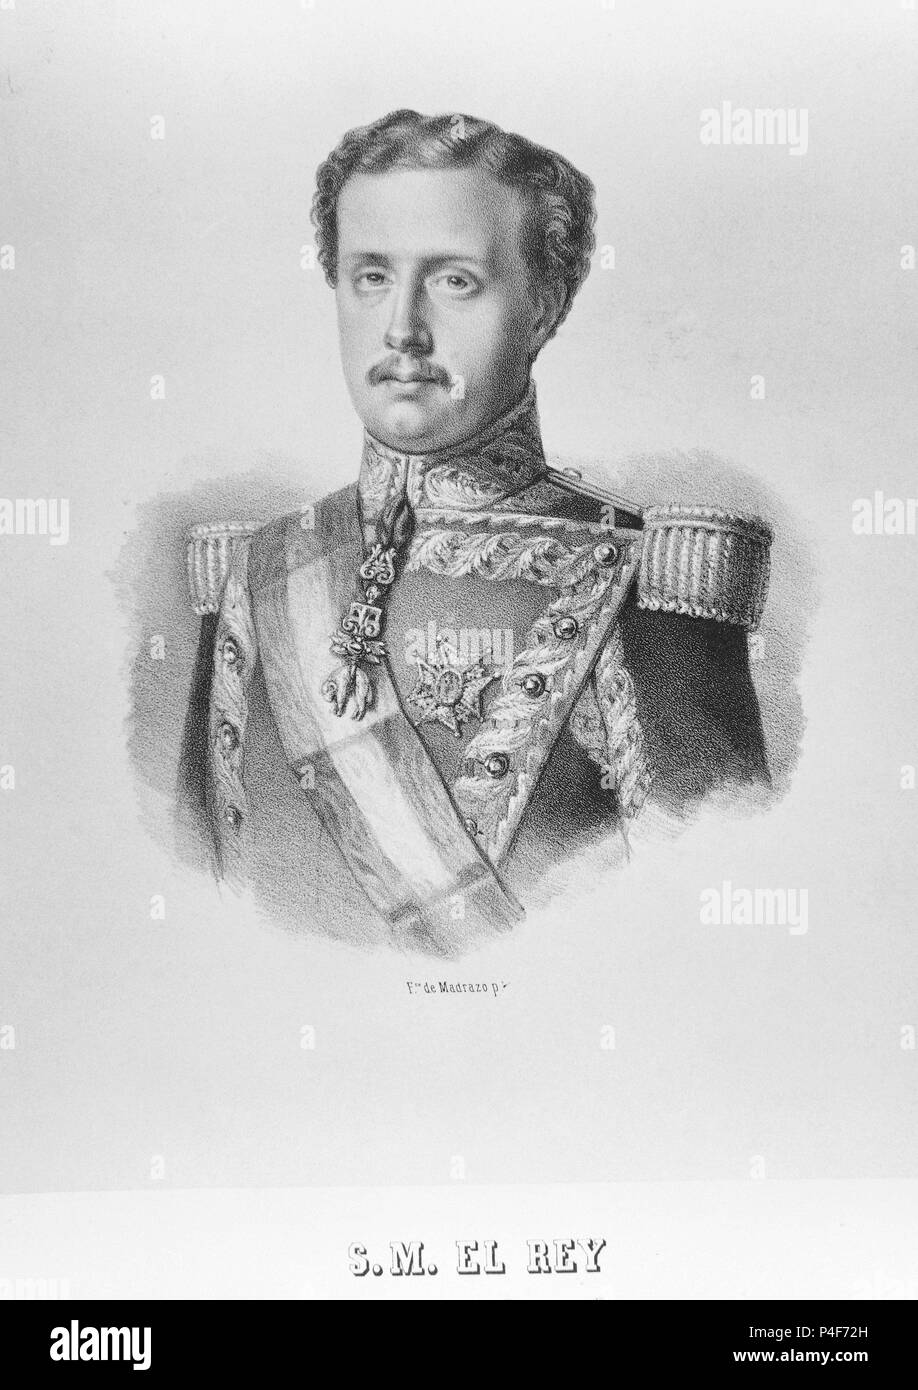 RETRATO DE DON FRANCISCO DE ASIS ESPOSO DE ISABEL II - 1822/1902 - GRABADO S XIX. Location: MUSEO ROMANTICO-GRABADO, MADRID, SPAIN. Stock Photo